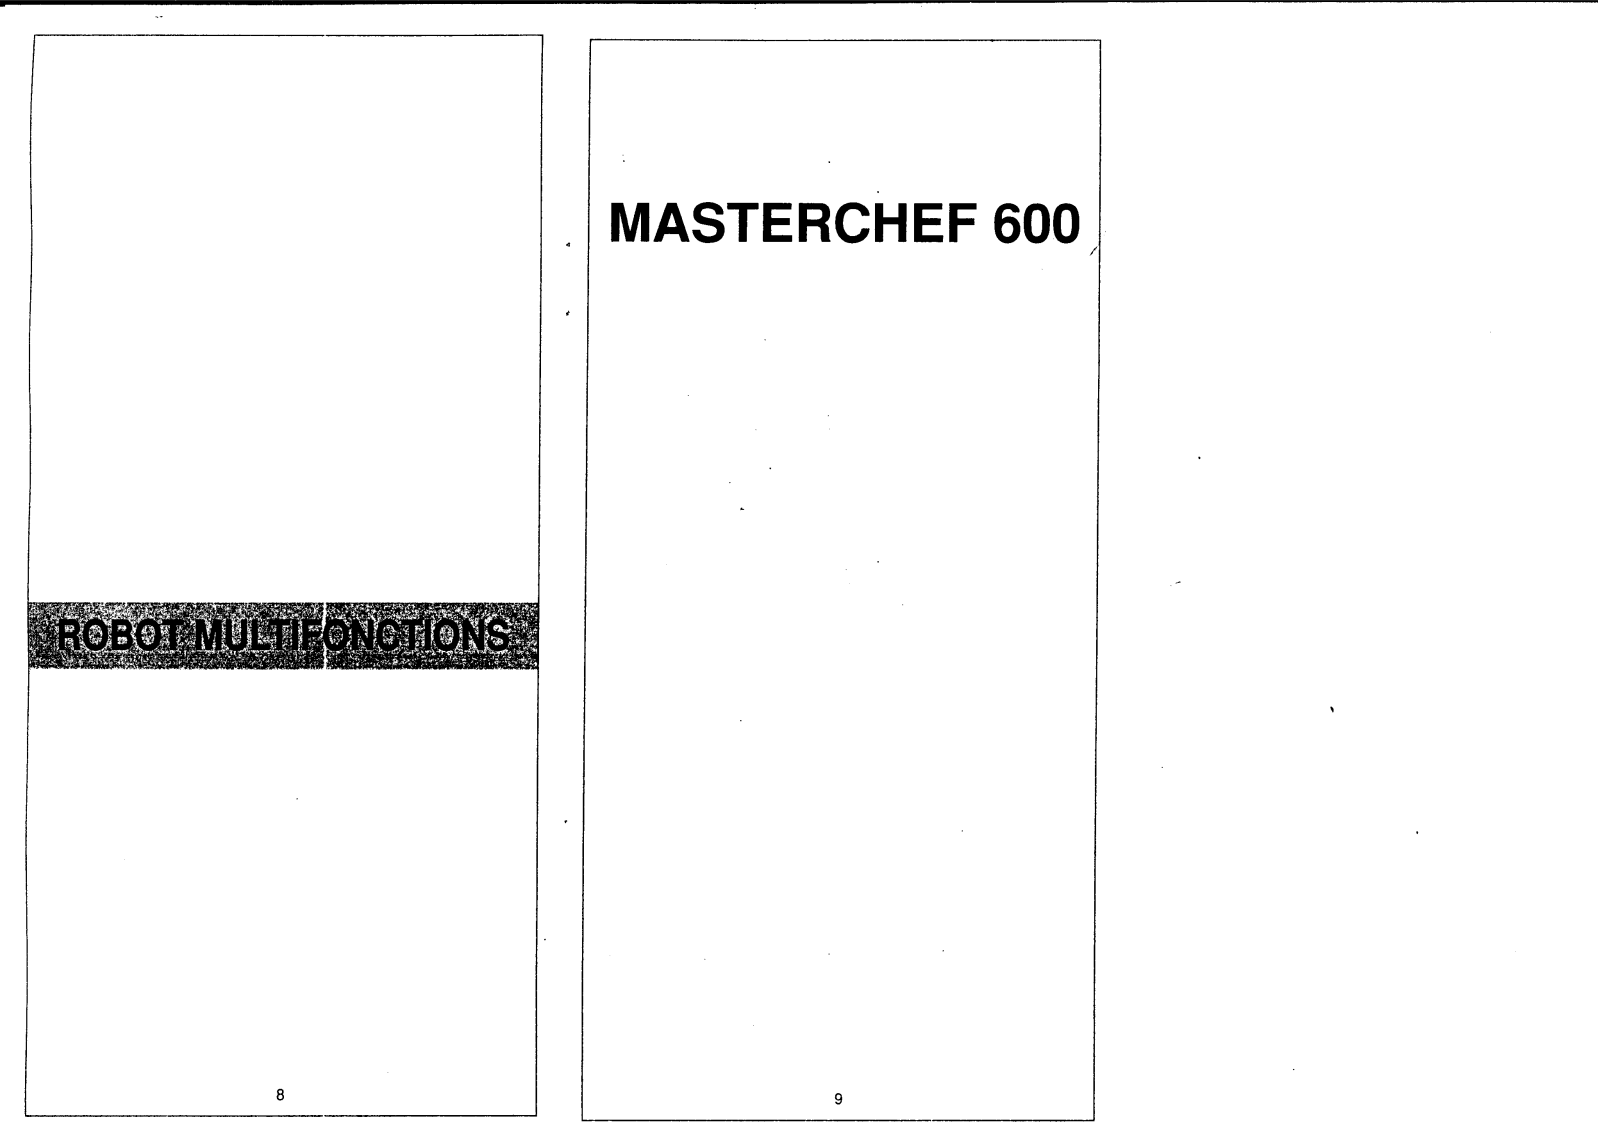 MOULINEX MASTERCHEF 600 User Manual